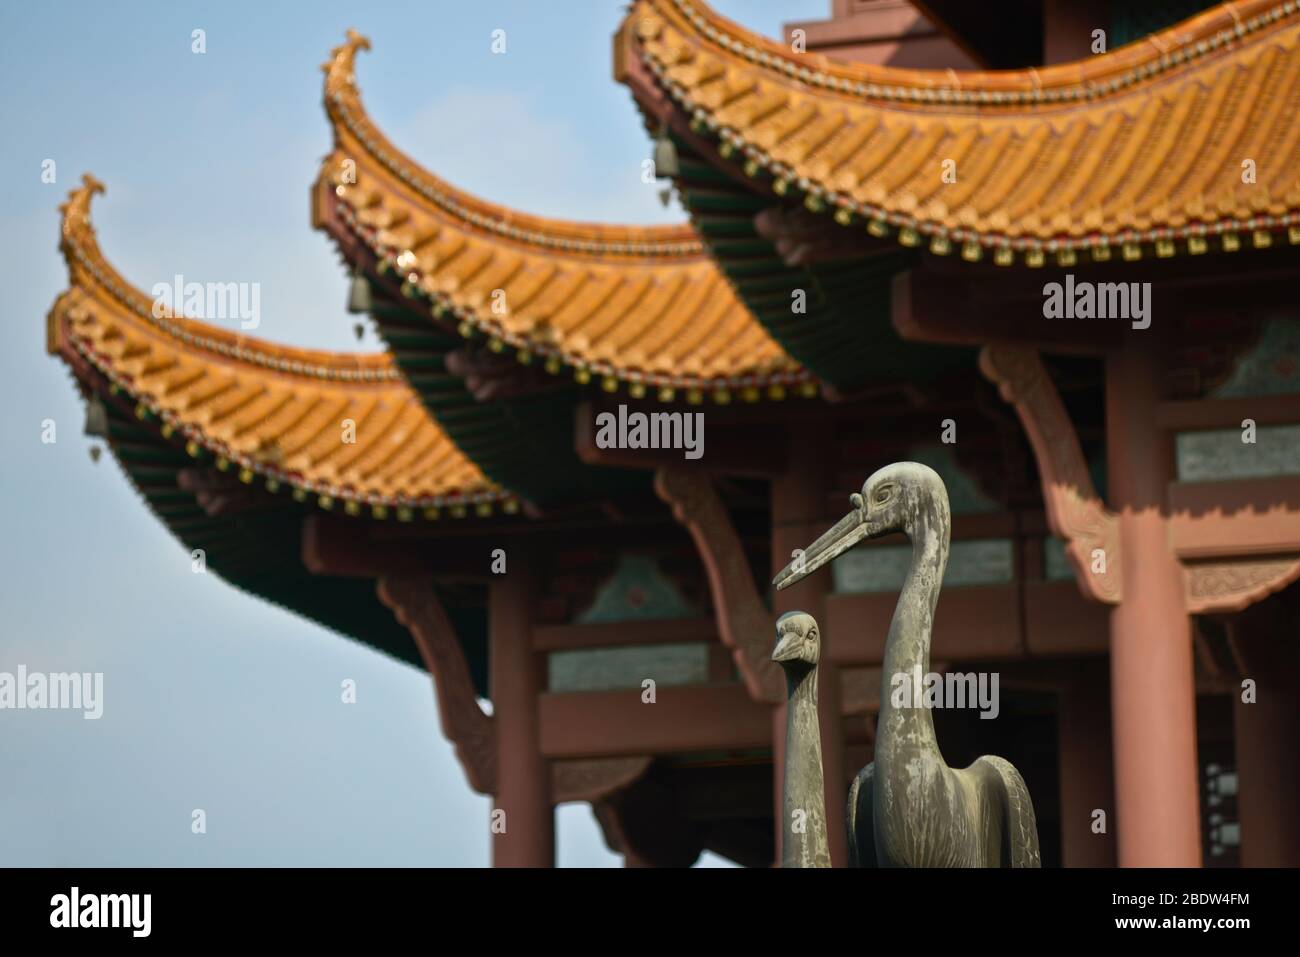 Torre de la grúa amarilla: Detalles de la arquitectura y esculturas de bronce de las grúas que regresan. Wuhan, China Foto de stock